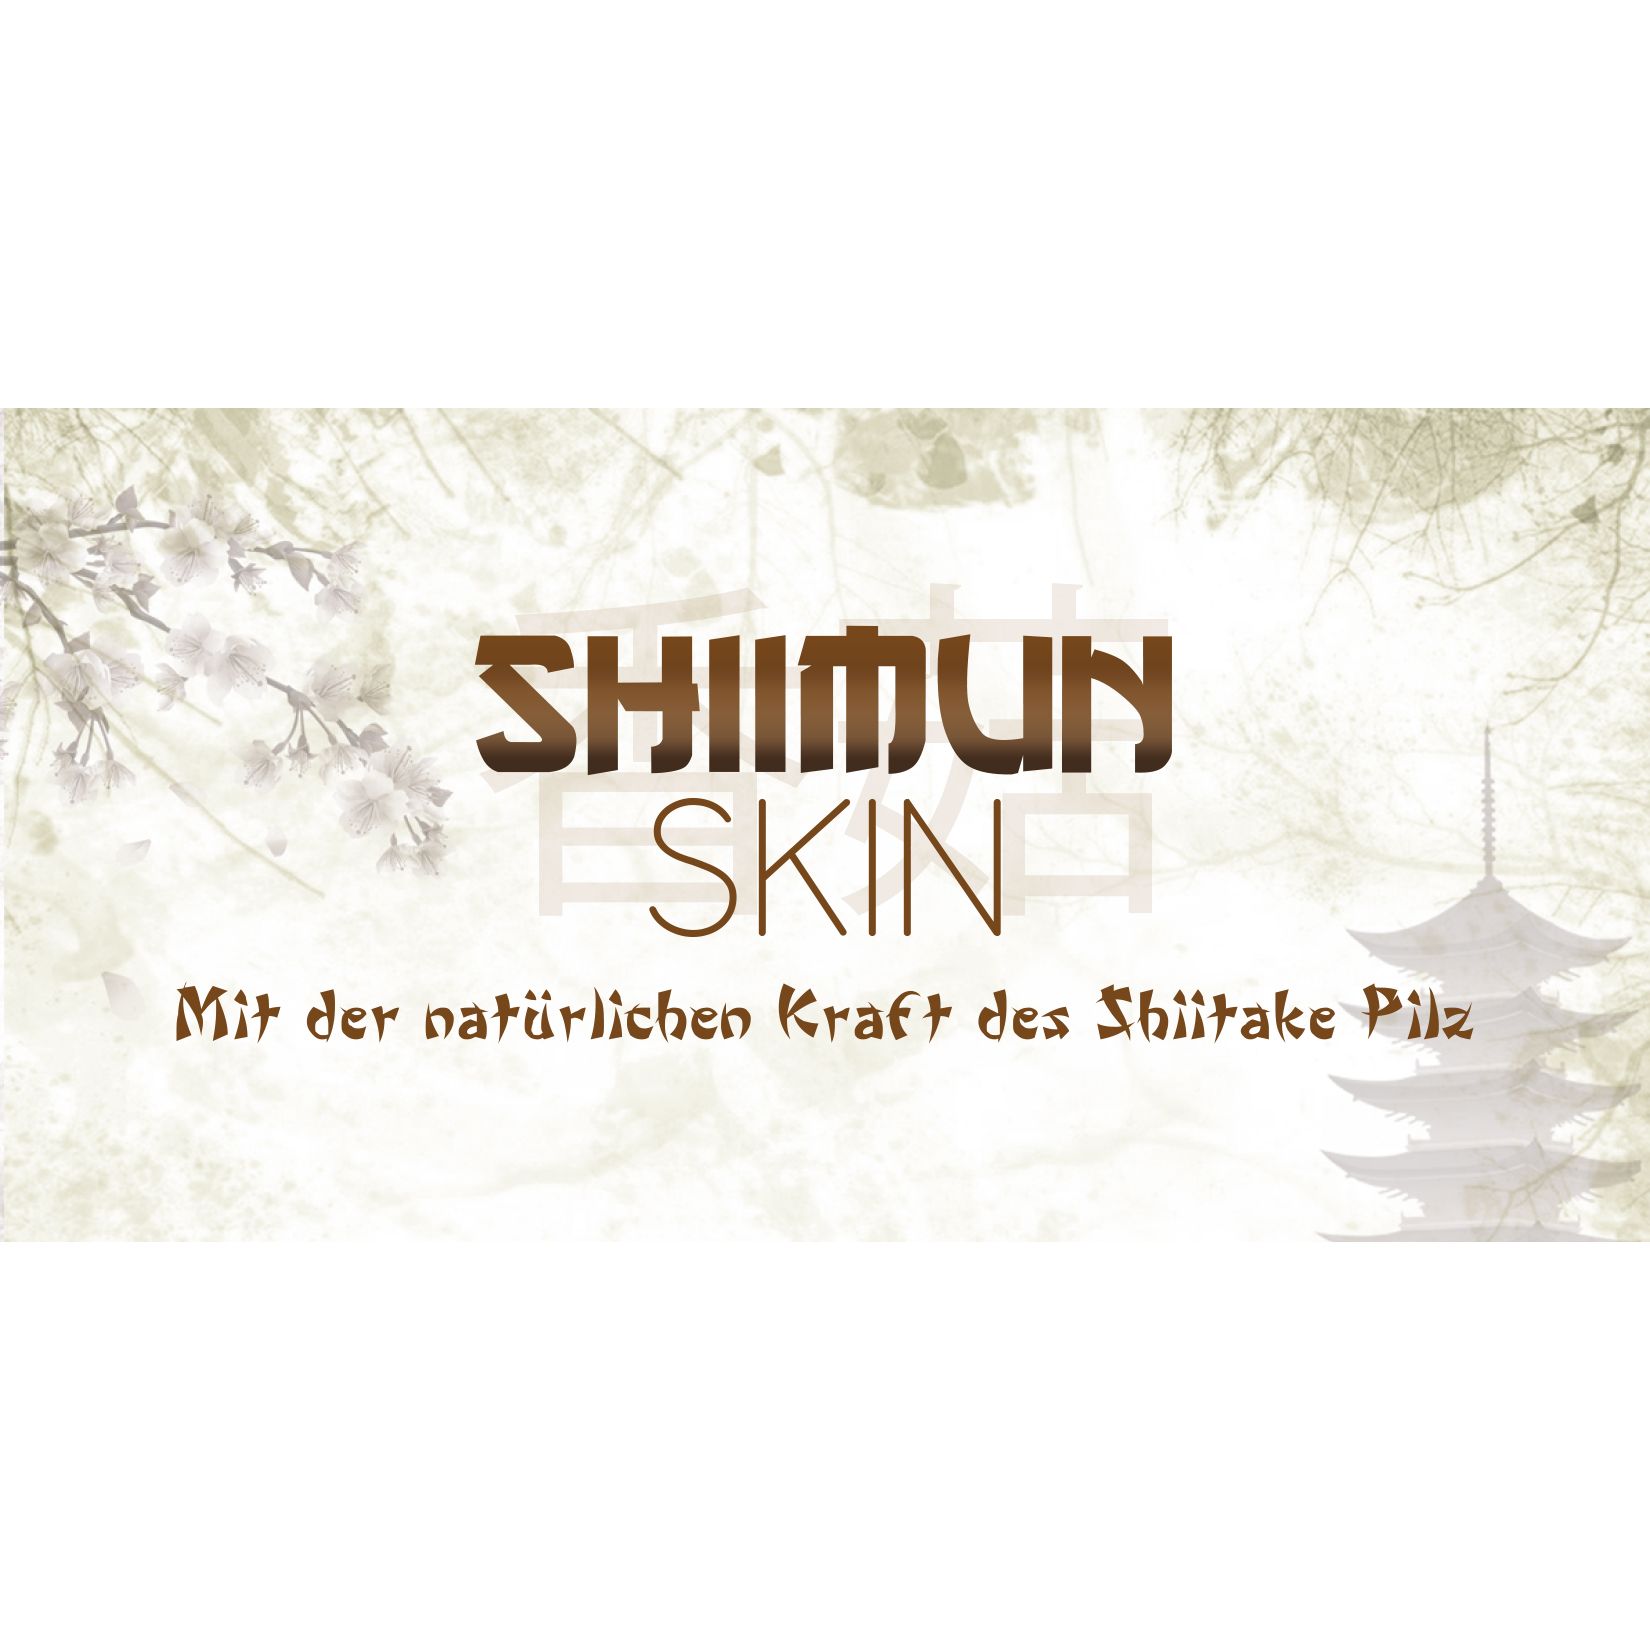 Marsapet Nahrungsergänzung für Hunde und Katzen mit Shiitake - Shiimun Skin Pulver